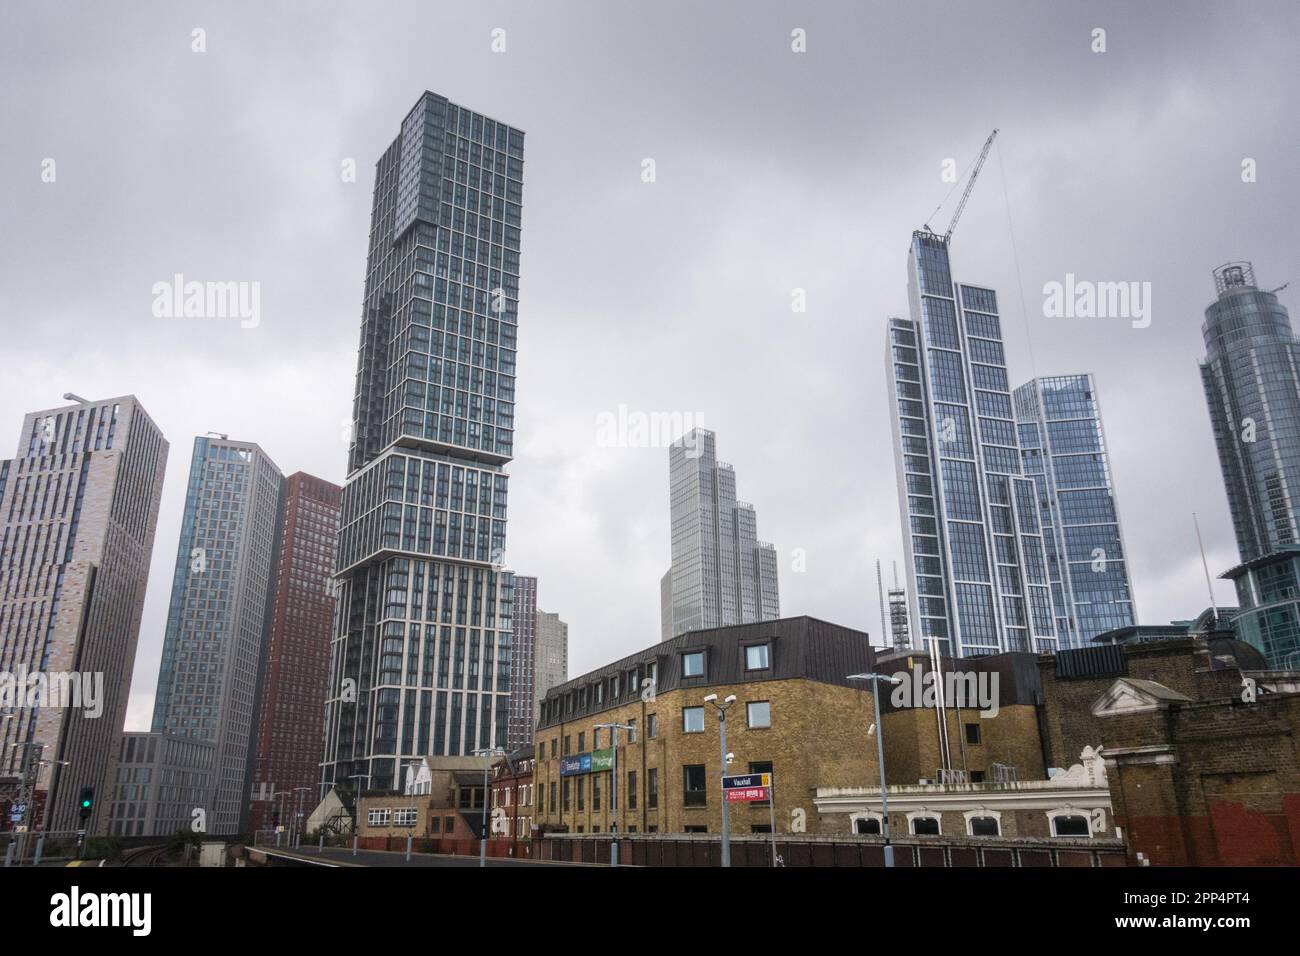 Des gratte-ciel s'élèvent autour de la gare de Vauxhall, Vauxhall, Londres, Angleterre, Royaume-Uni Banque D'Images